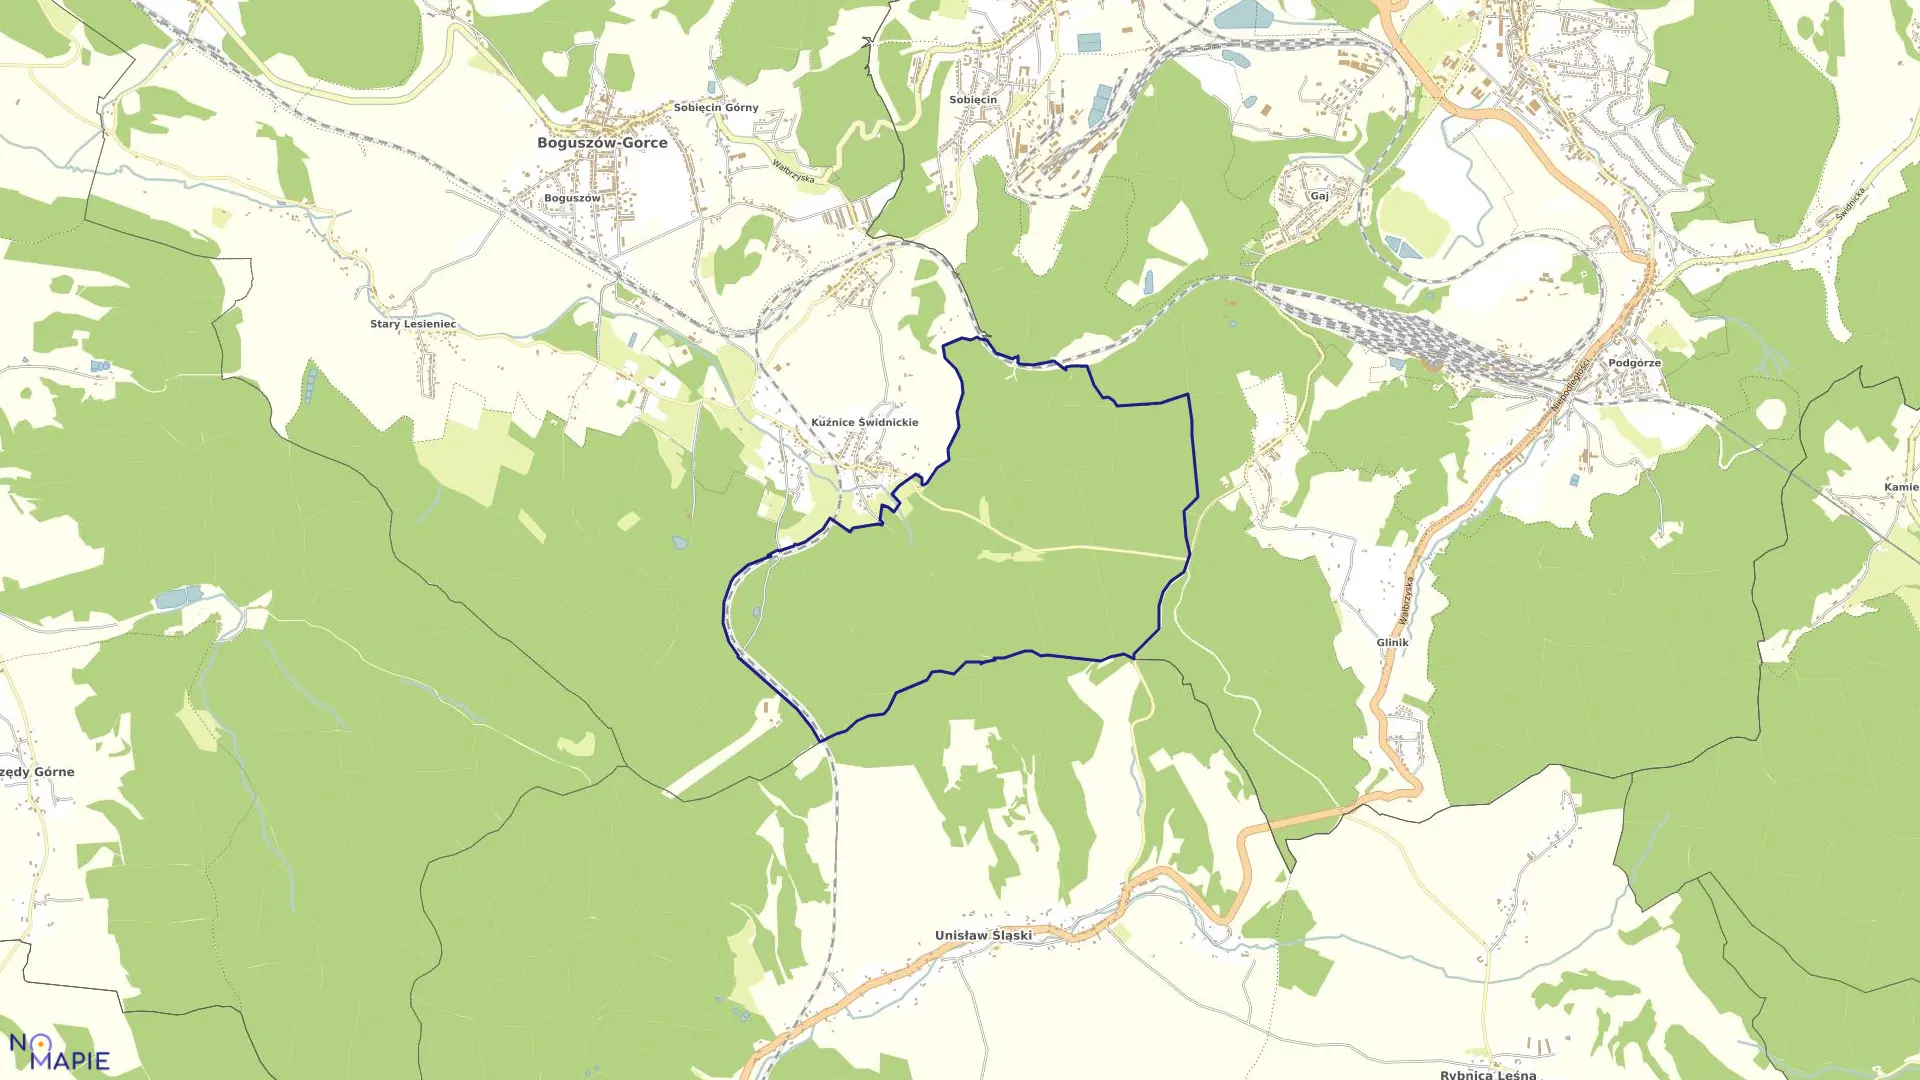 Mapa obrębu NR 8 KUŹNICE ŚWIDNICKIE w mieście Boguszów-Gorce